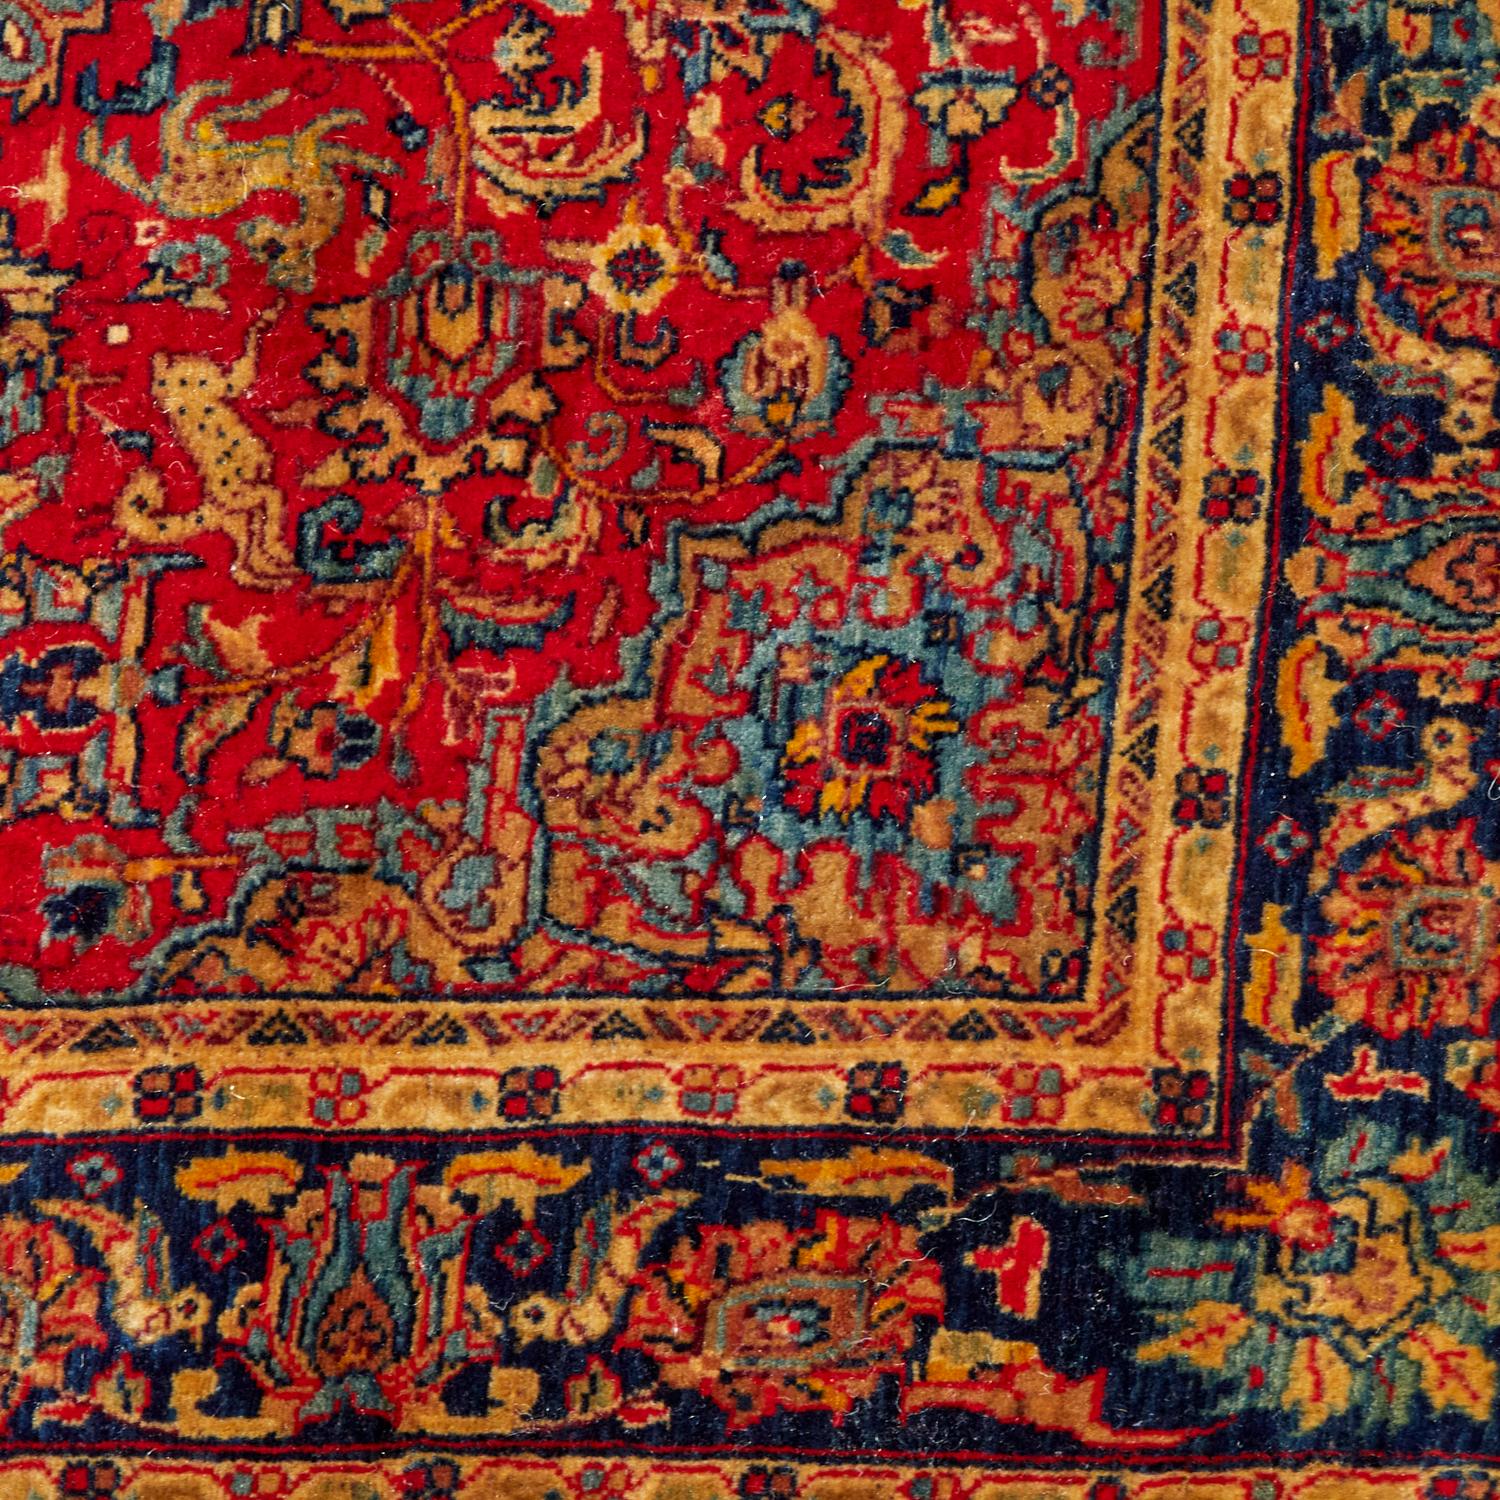 Début du 20e siècle, tapis sarouk noué serré, probablement un tapis sarouk de Farahan, aux couleurs riches et chatoyantes, avec un médaillon central entouré d'oiseaux et d'animaux, de flore et de faune.

Les tapis persans noués à la main de type